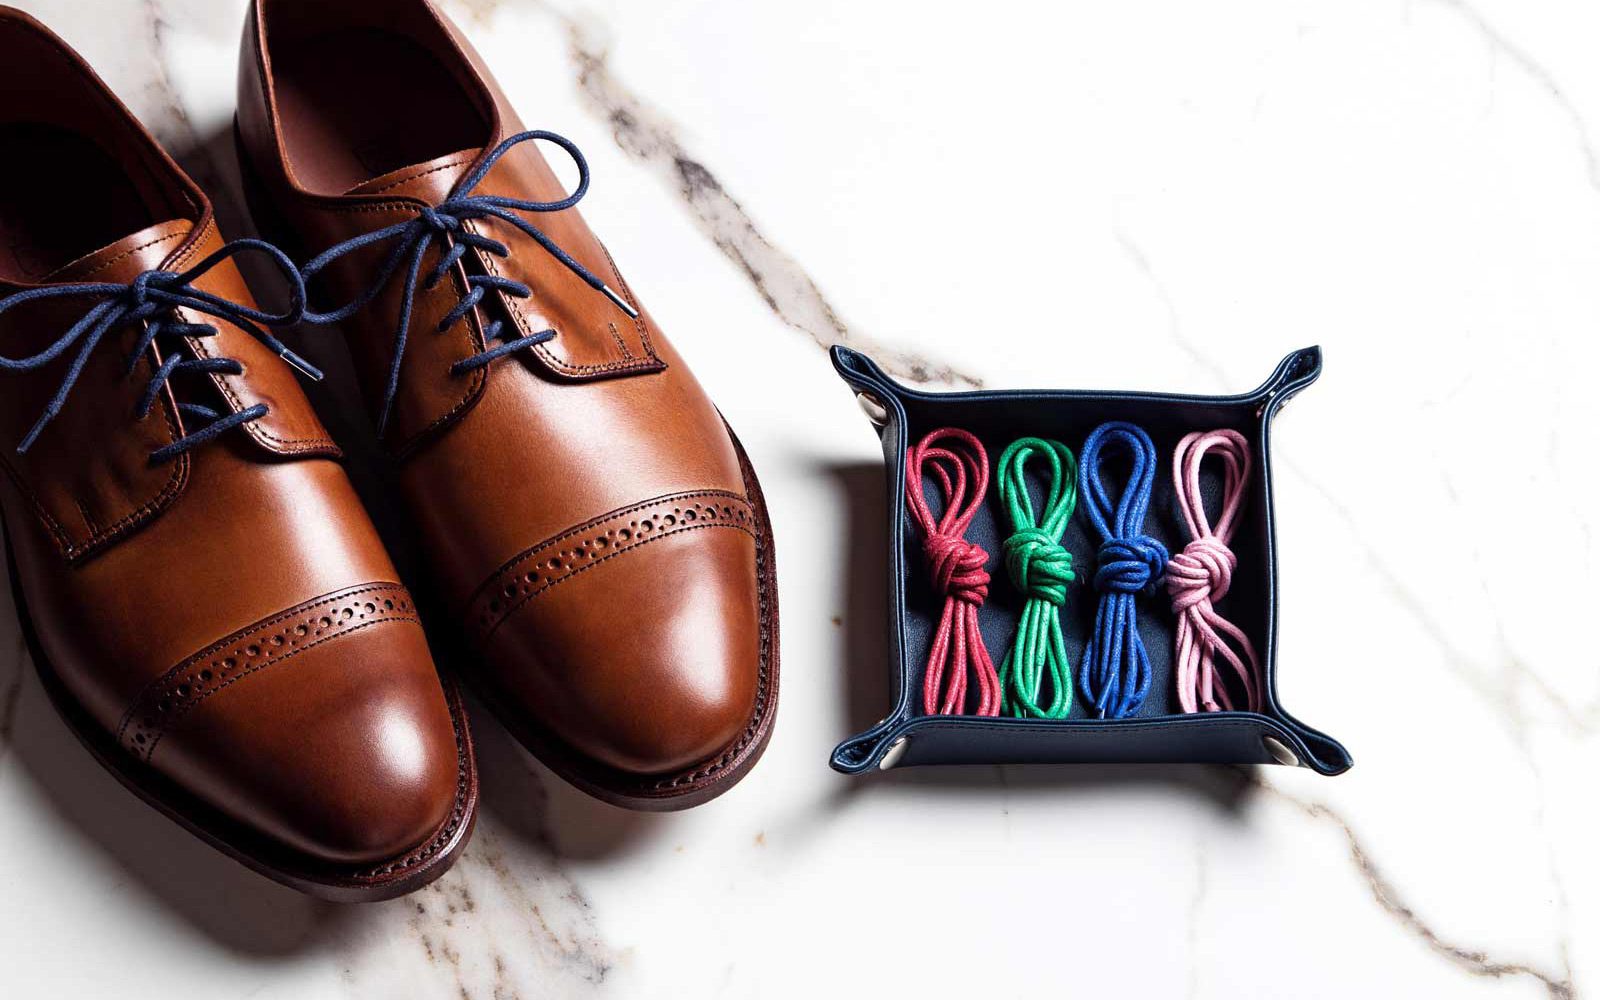 shoelaces for men's dress shoes